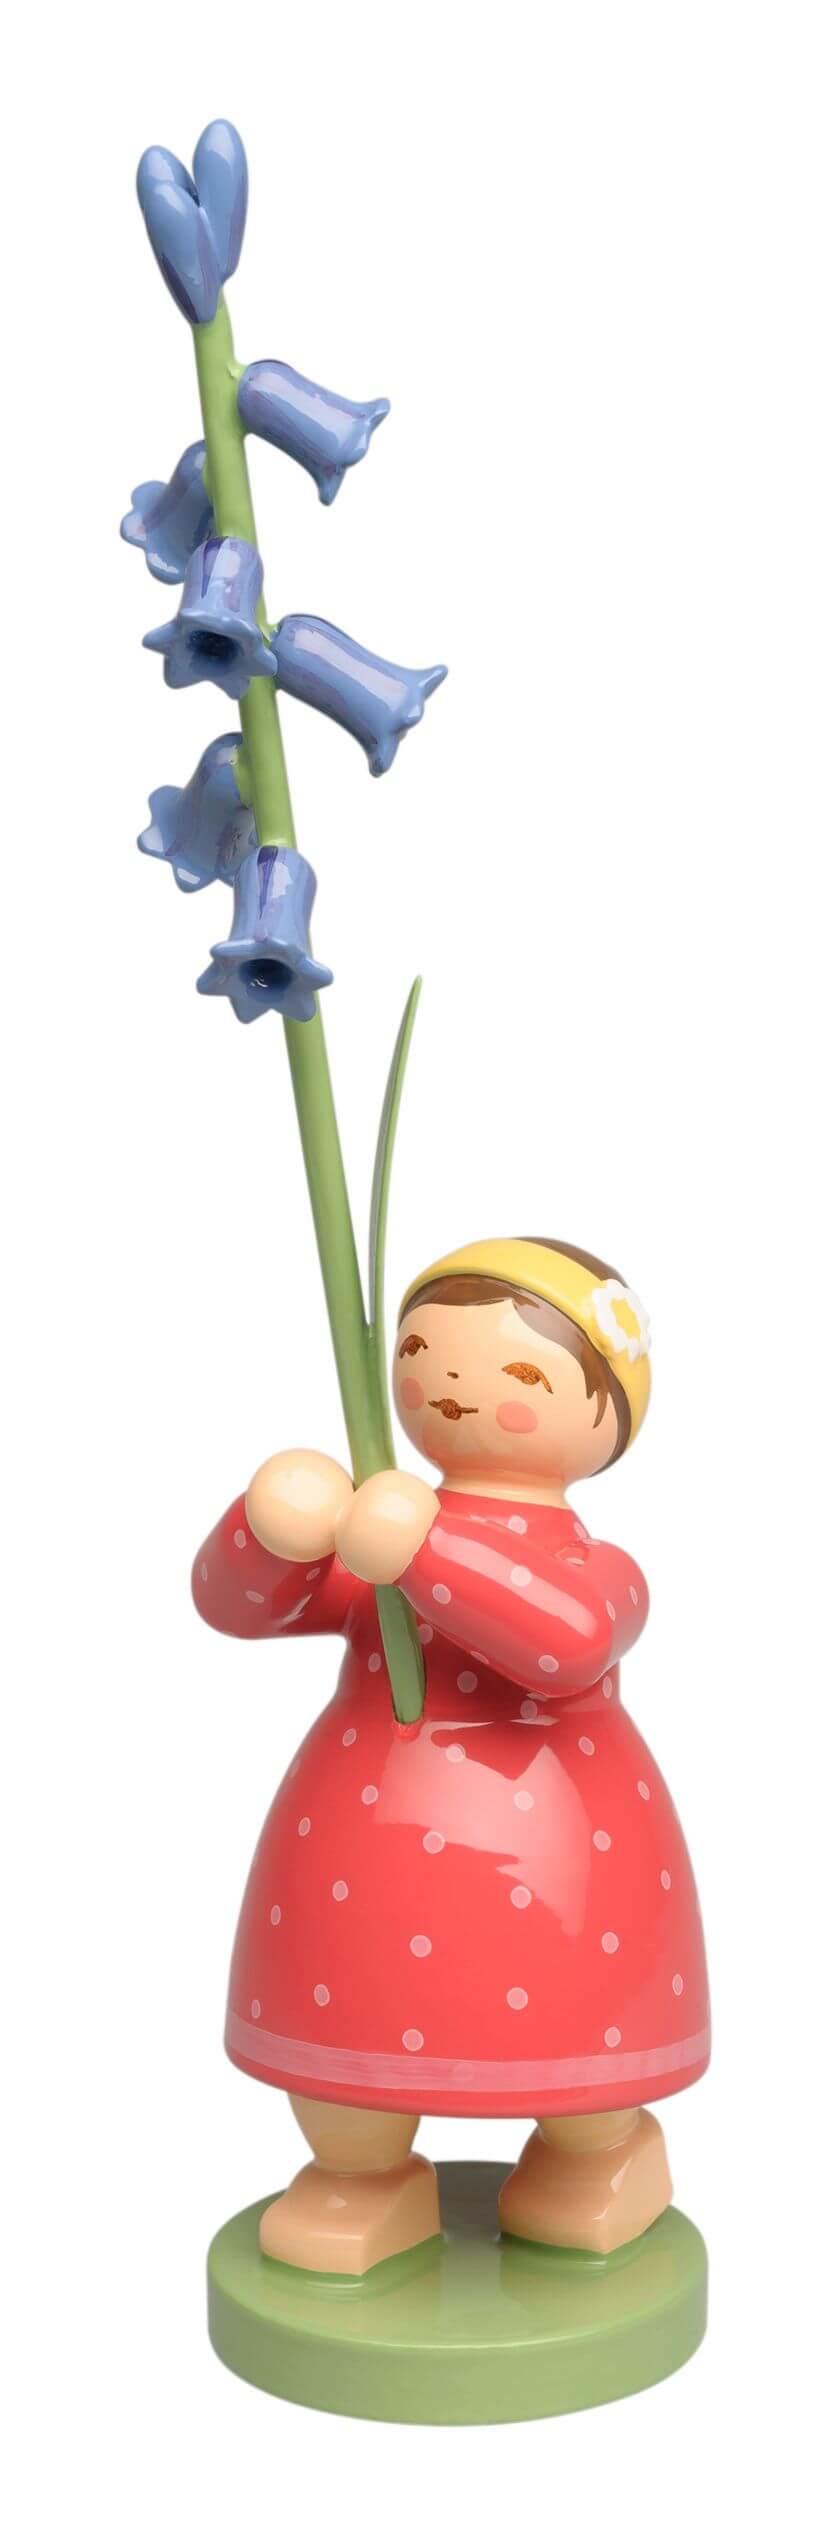 Wendt & Kühn handbemalte Holzfigur in Form eines Blumen-Mädchens mit Hasenglöckchen-Zweig in der Hand.